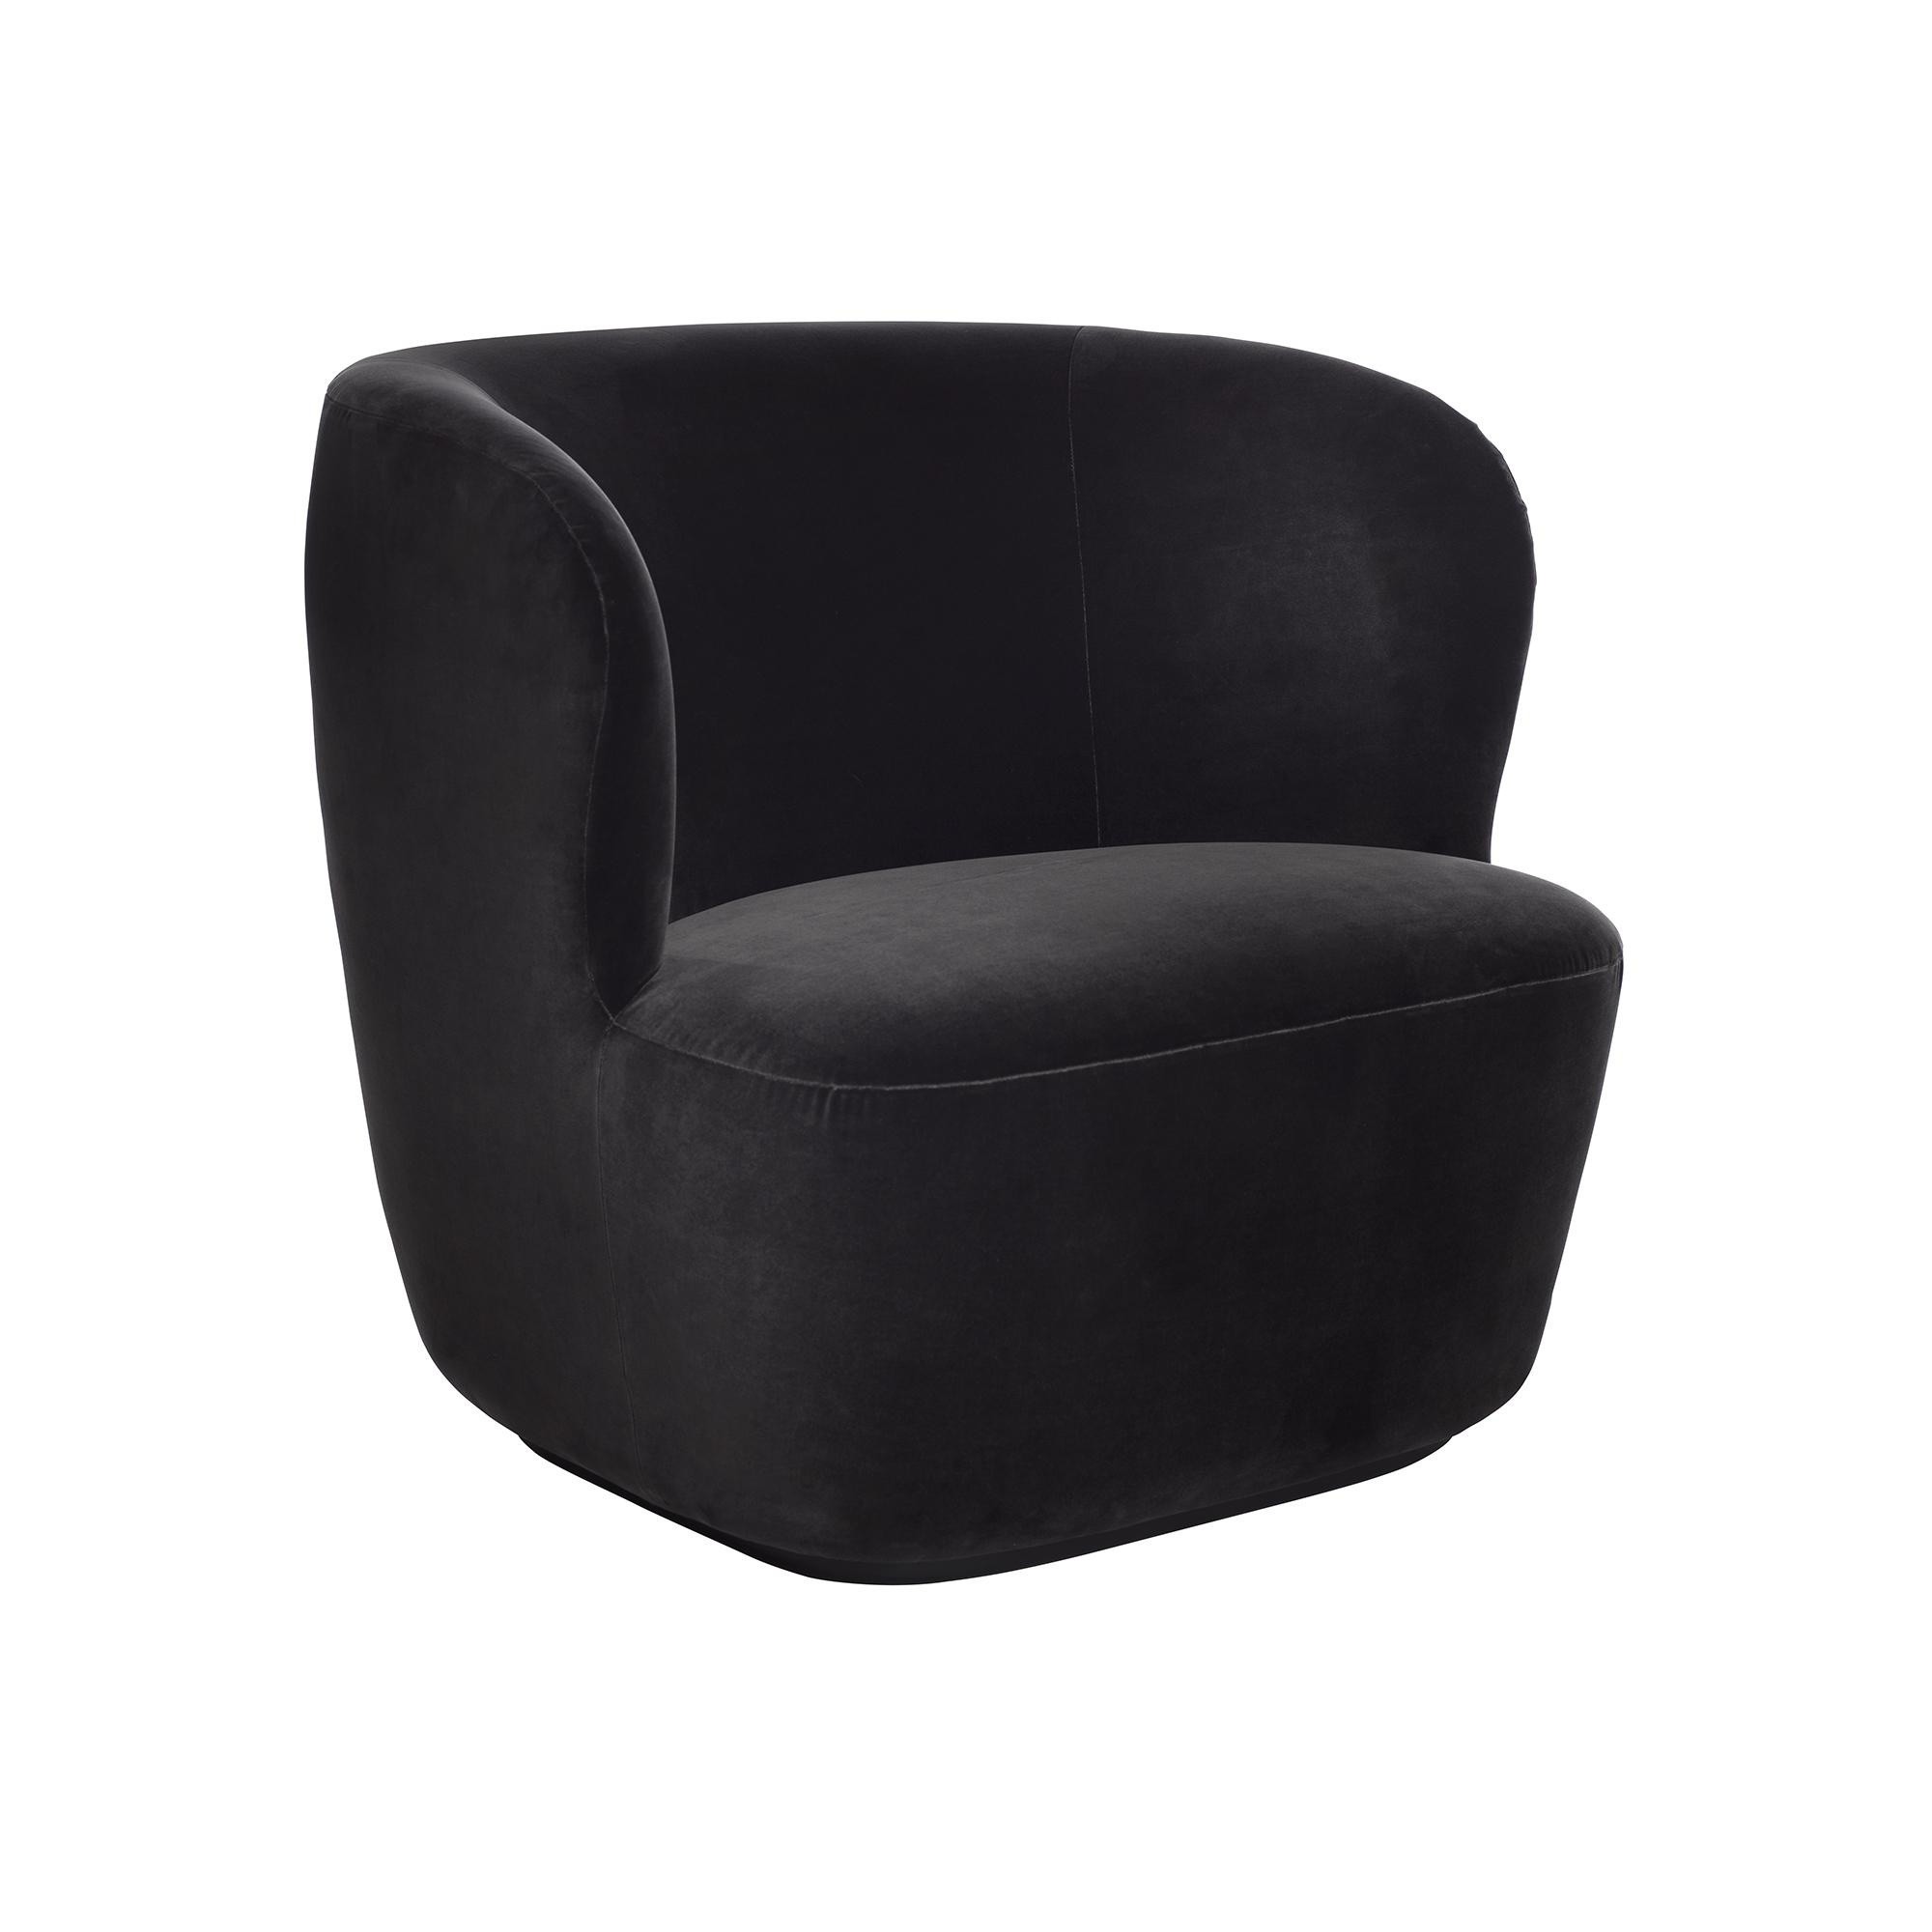 Gubi Stay Lounge Chair Sessel 2000x2000 ID 83b cf2b65ef379a082d163c153b